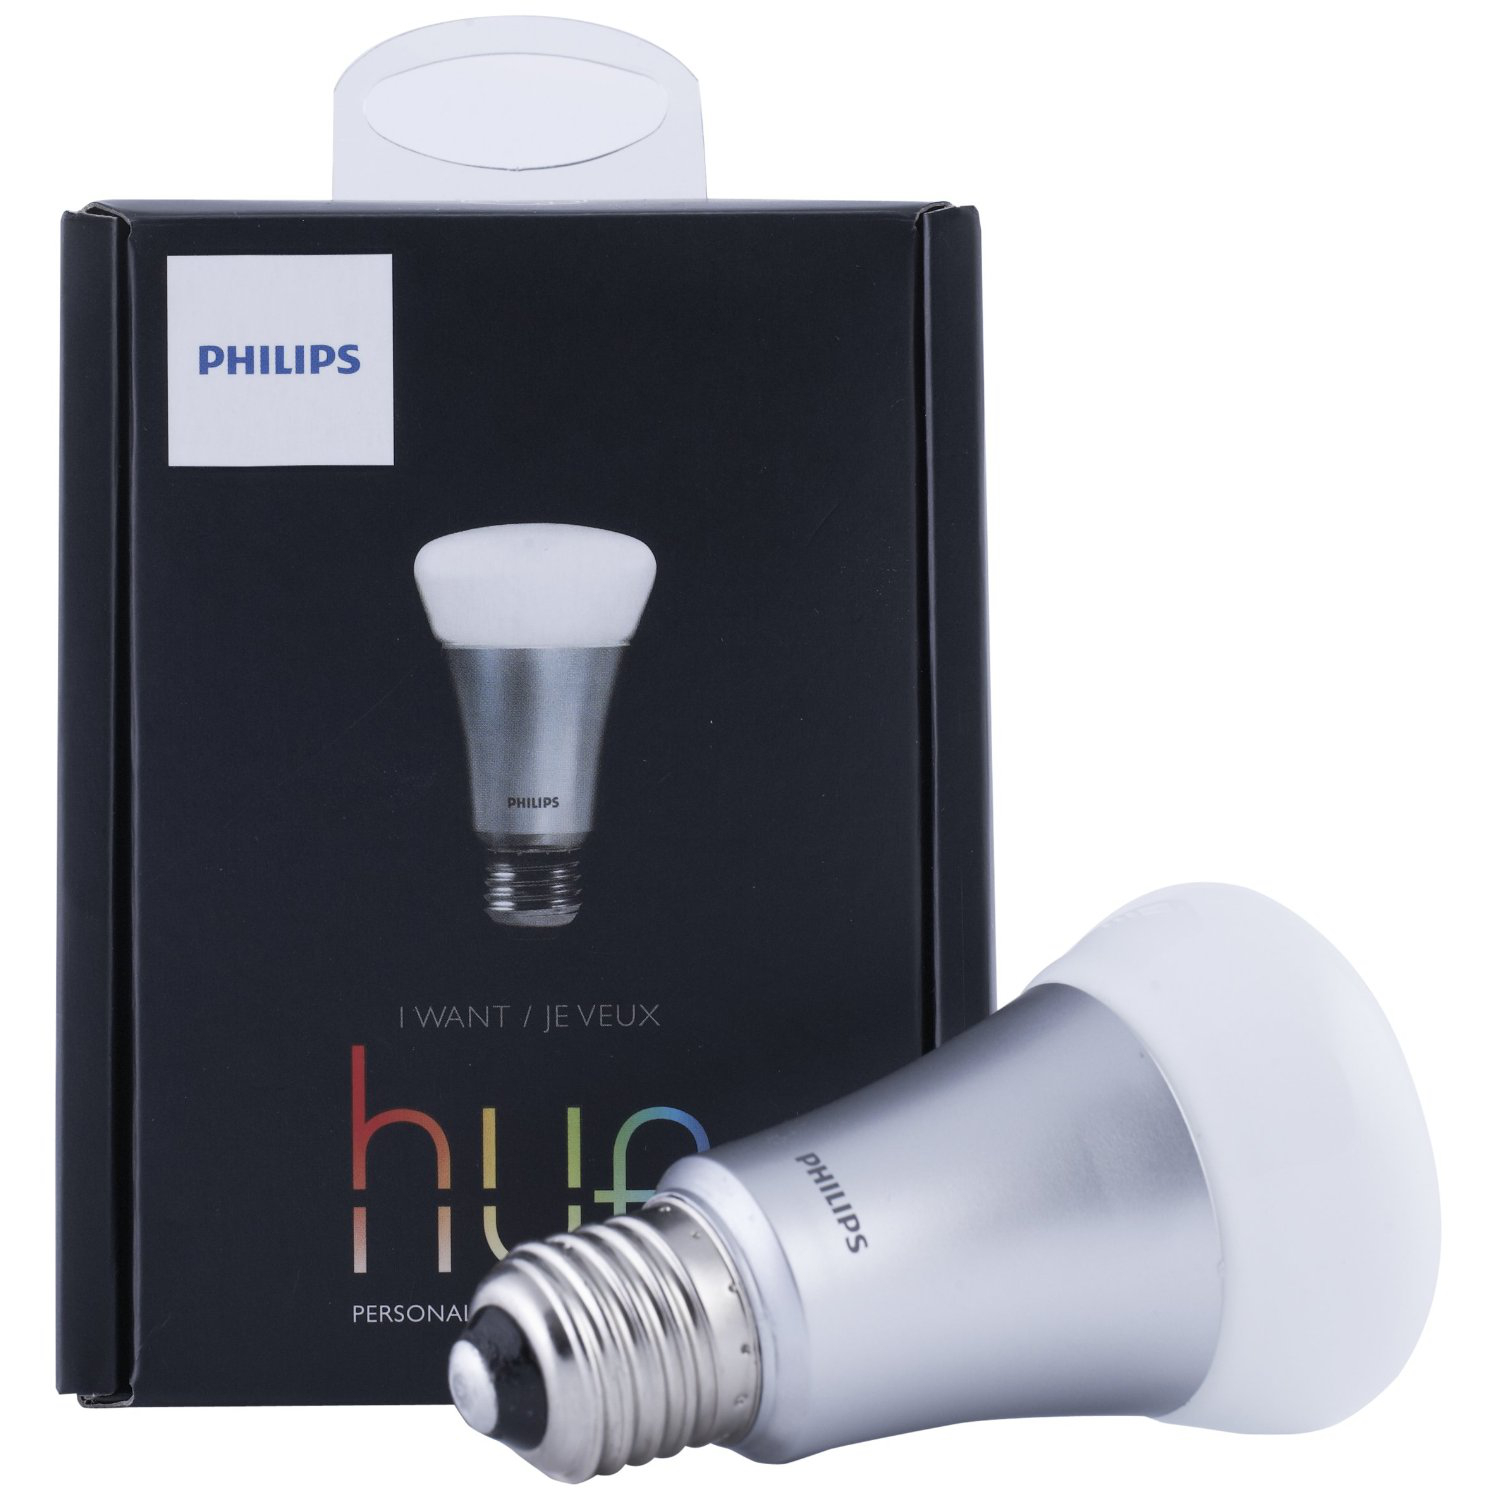  Bec LED Philips Hue, 9W, RGB, Wi-Fi 